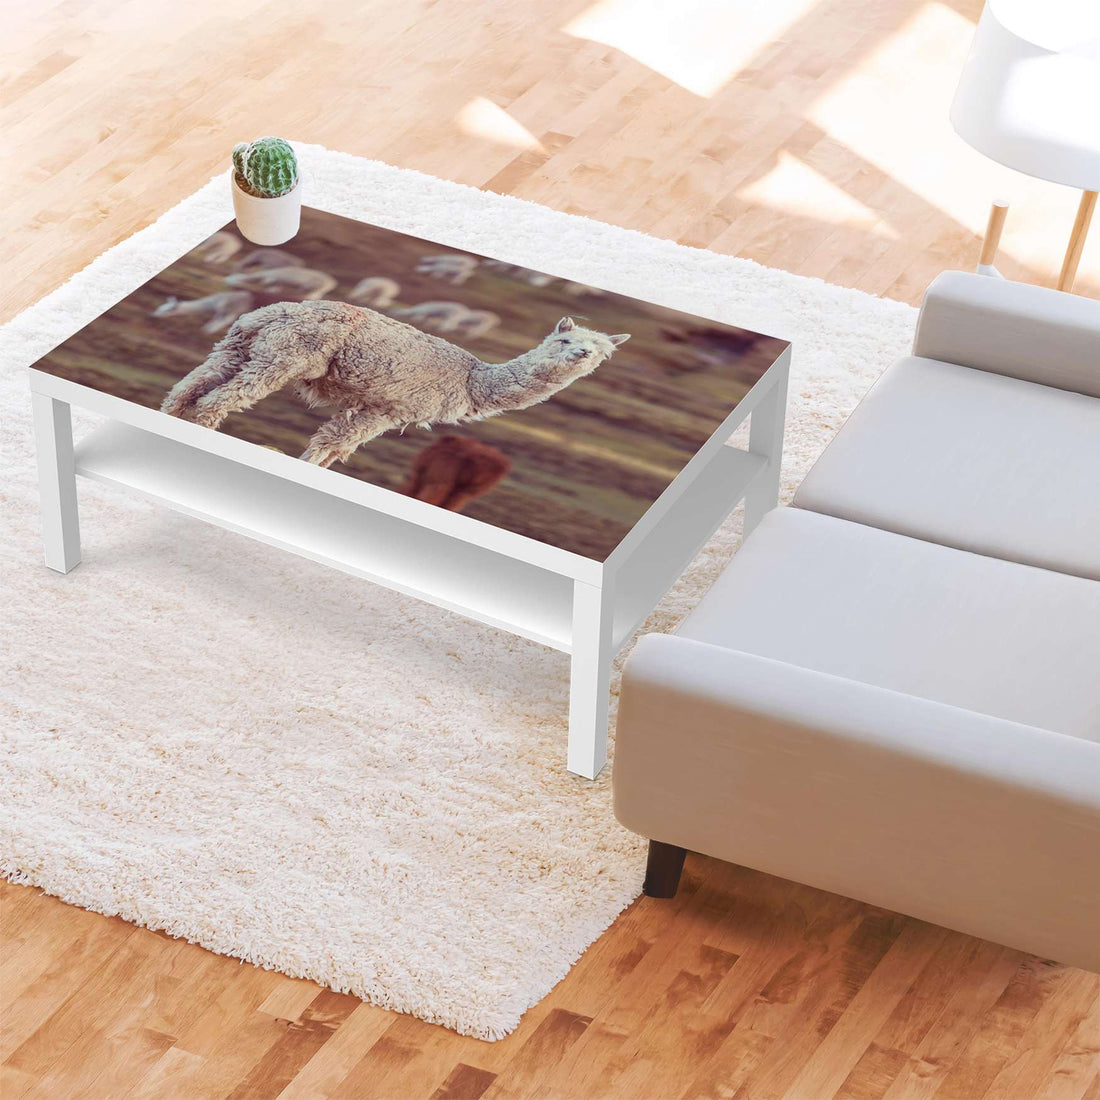 Klebefolie Pako - IKEA Lack Tisch 118x78 cm - Wohnzimmer